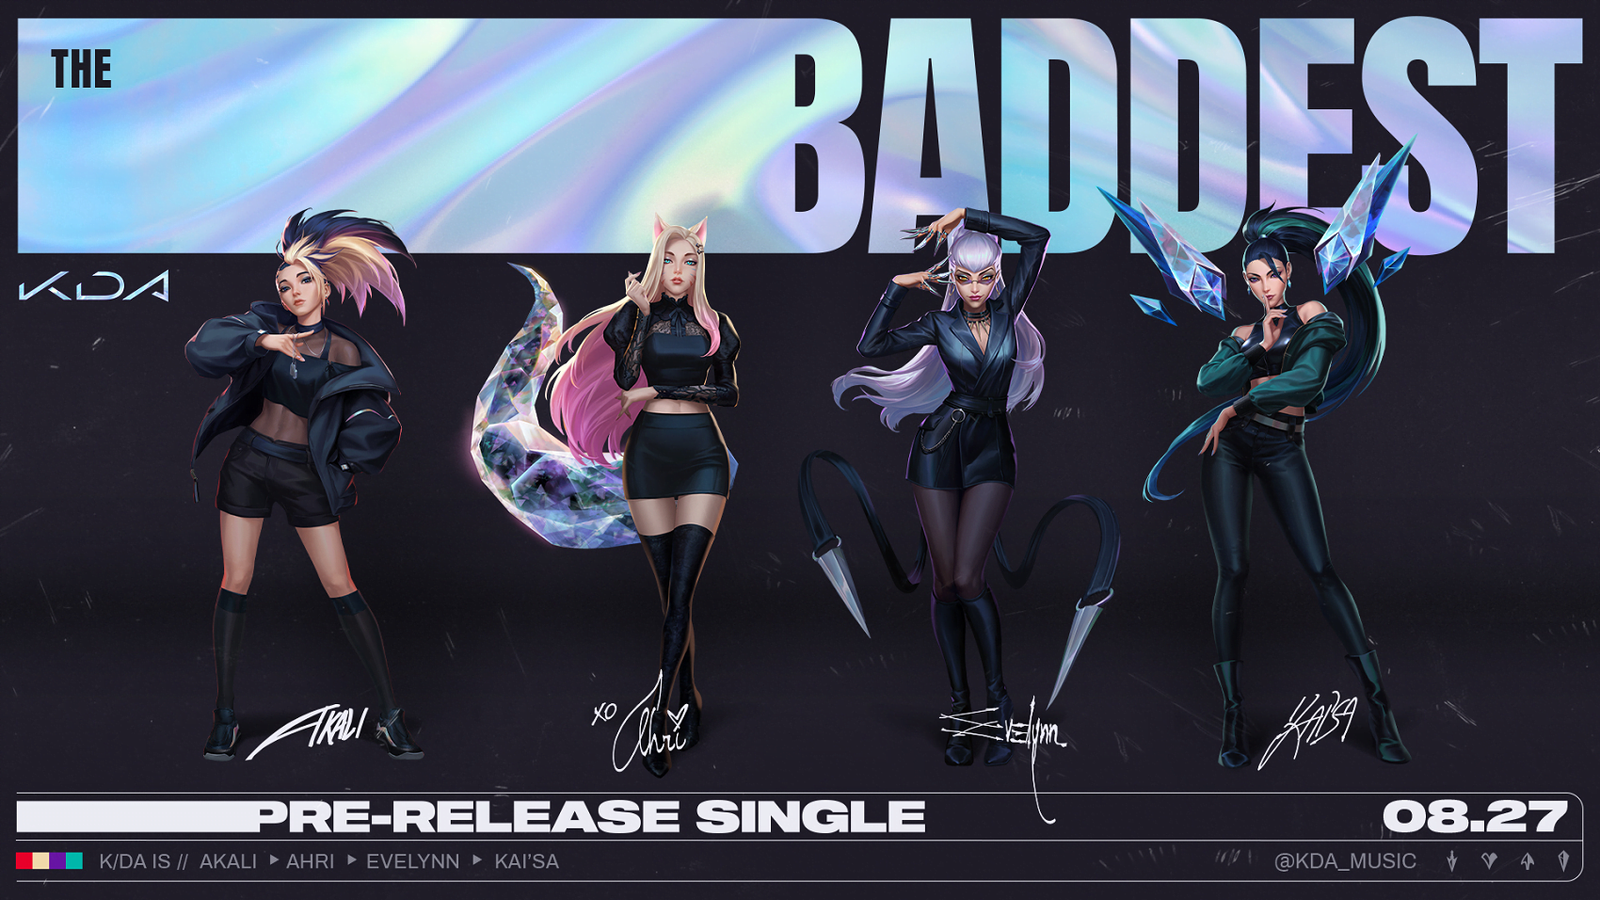 LoL Grupo K/DA lança nova canção de nome “The Baddest”